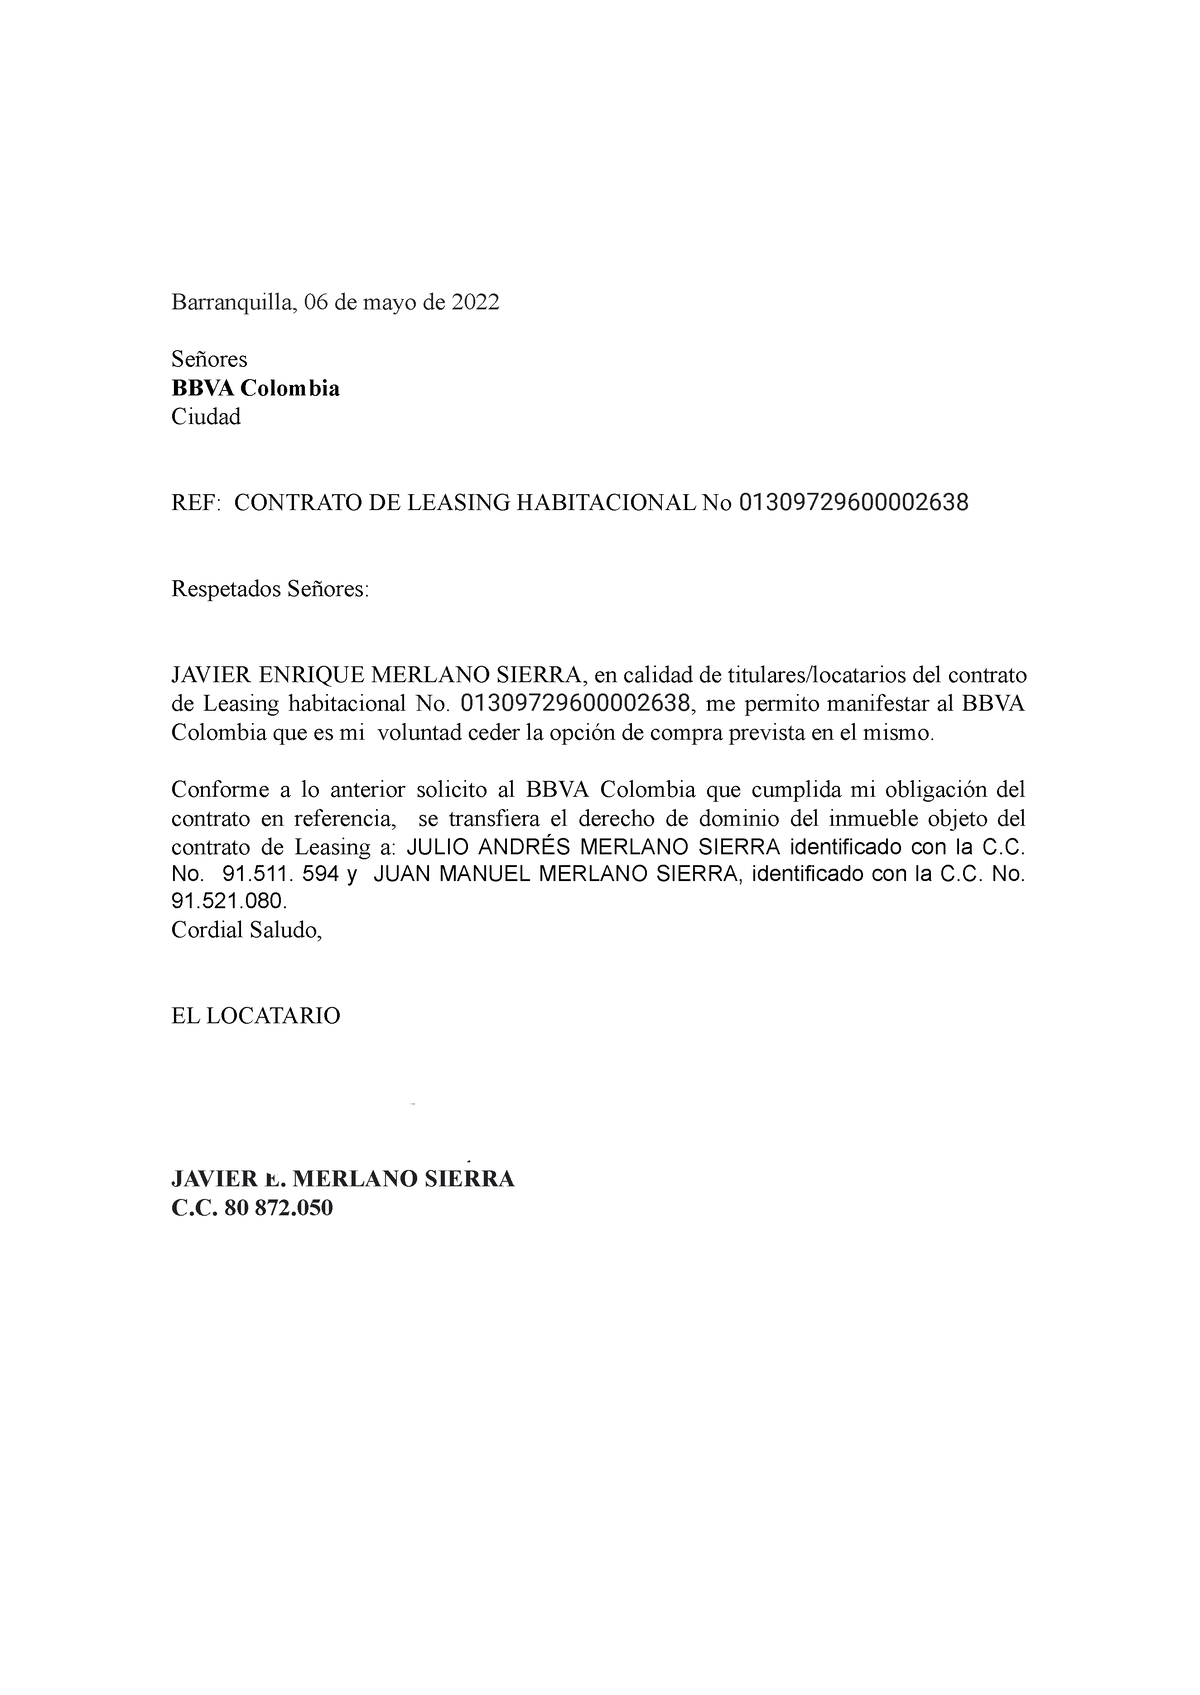  Carta Cesión Opcion DE Adquisicion Habitacional .docx - Barranquilla,  06 de mayo de 2022 Señores - Studocu